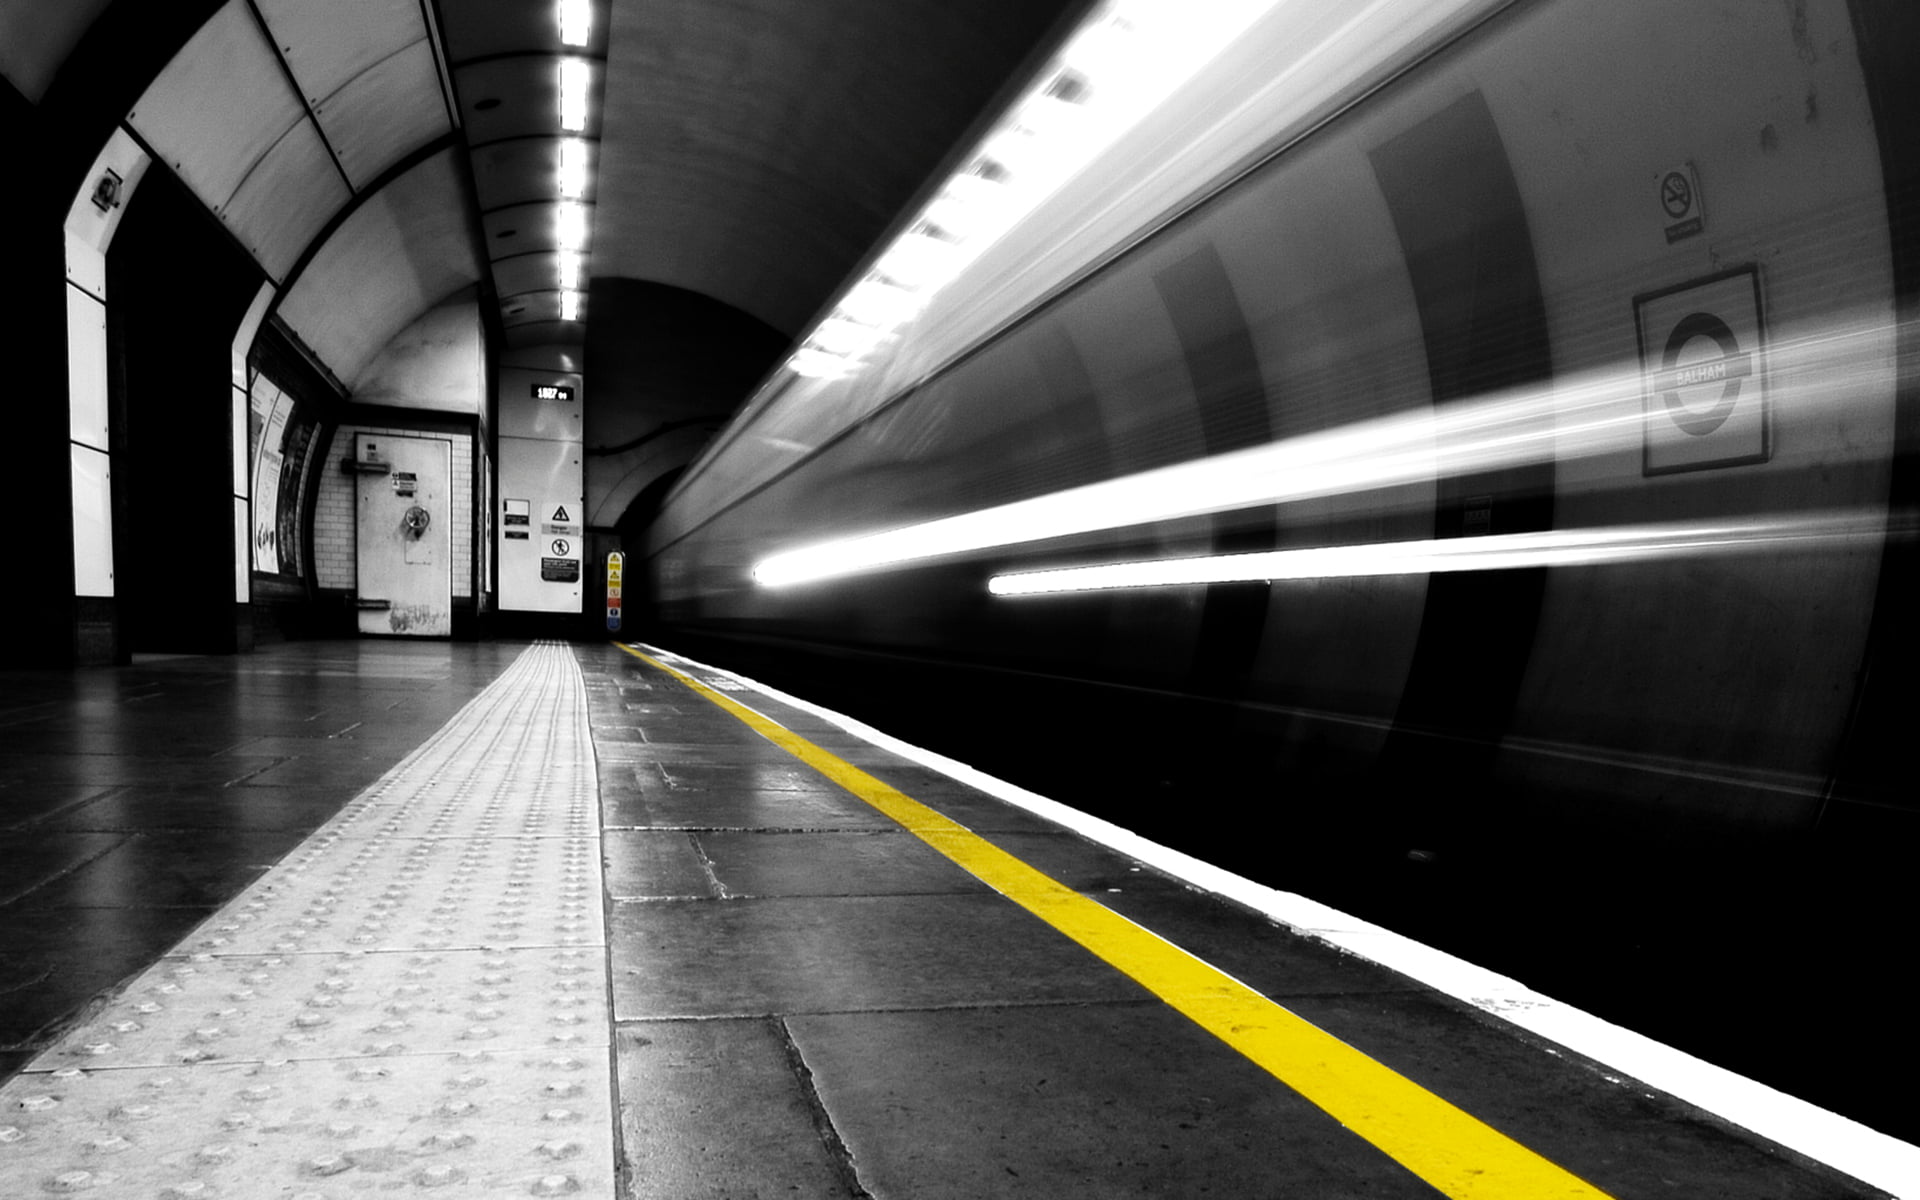 subway train station, timelapse photography of a subway, London Underground